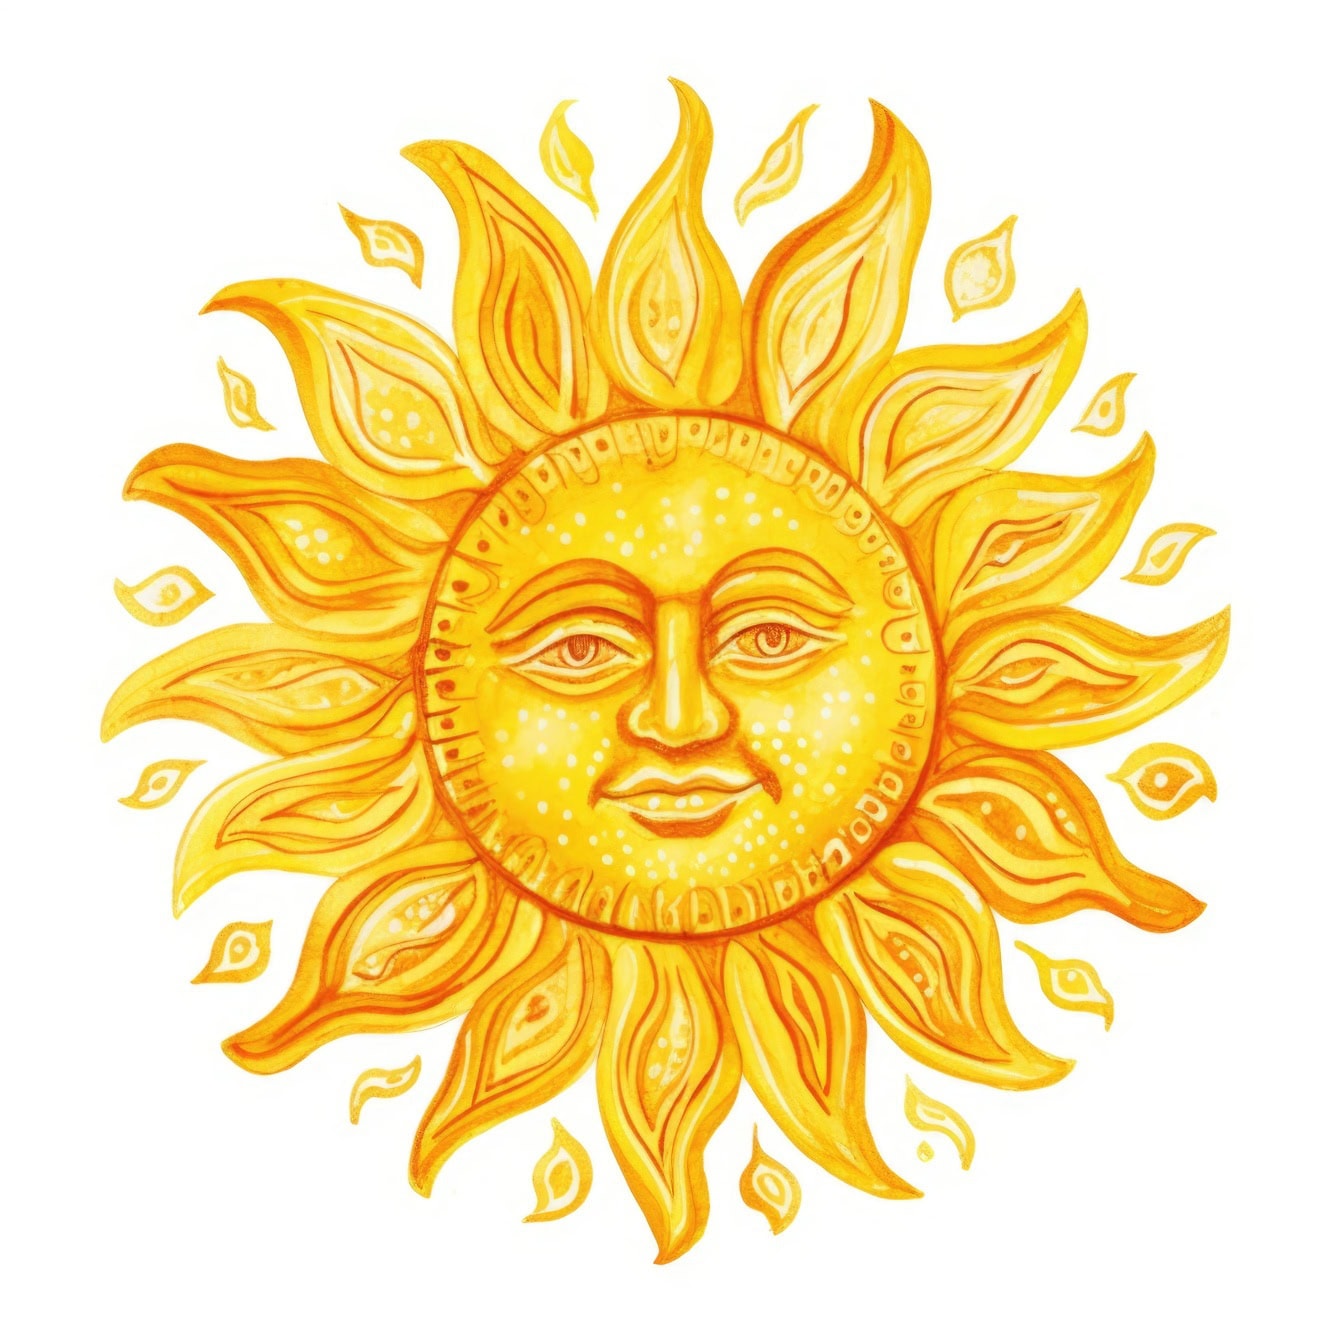 Γραφική απεικόνιση ενός πορτοκαλοκίτρινου ήλιου με πρόσωπο σε λευκό φόντο